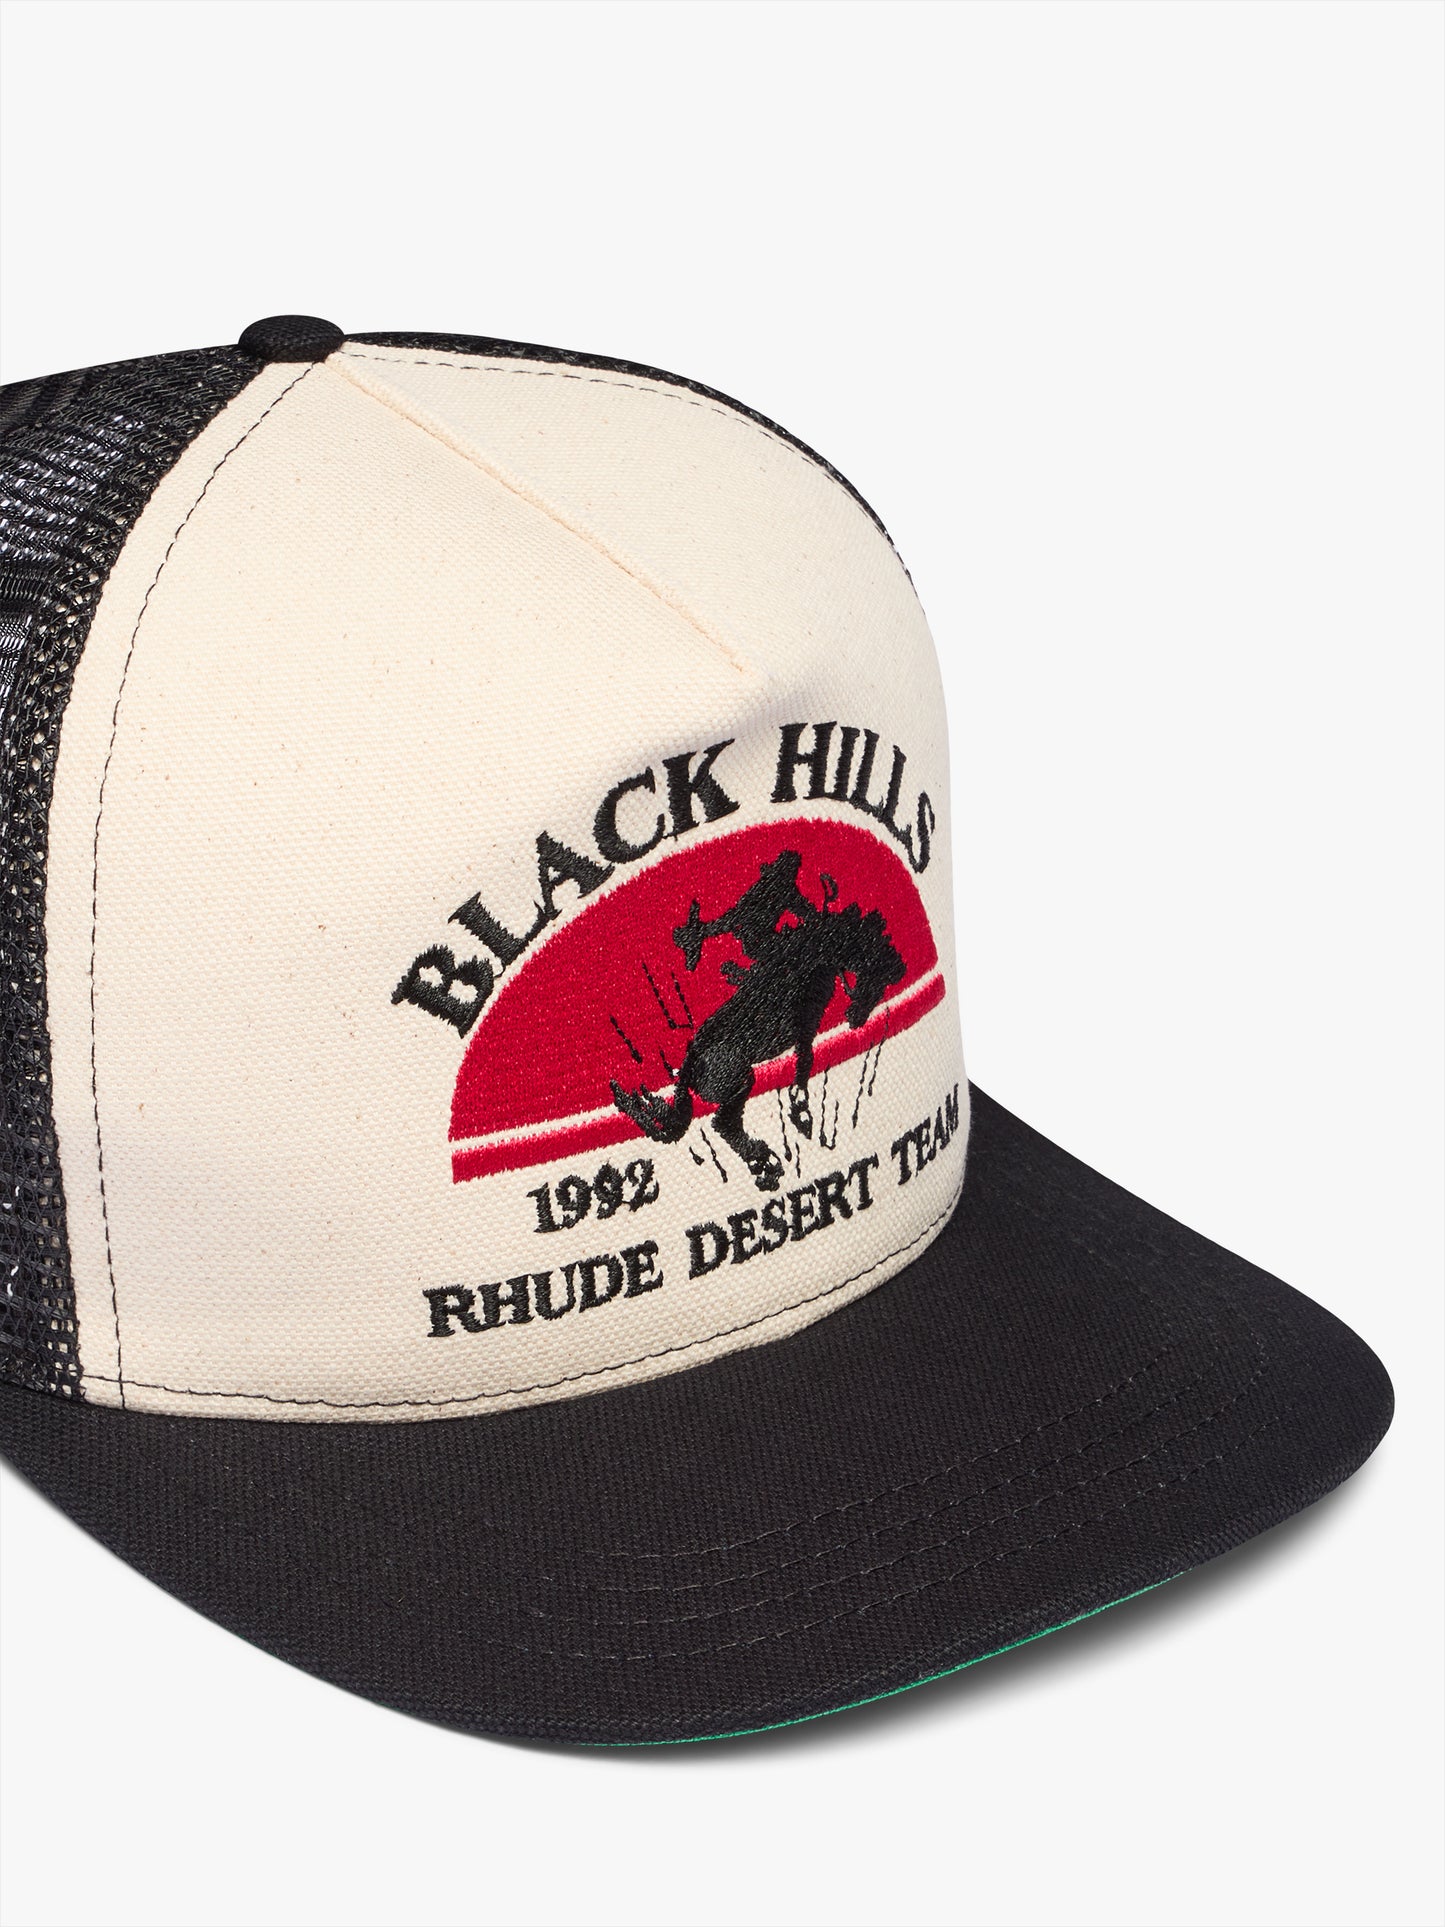 BLACK HILLS CANVAS TRUCKER HAT